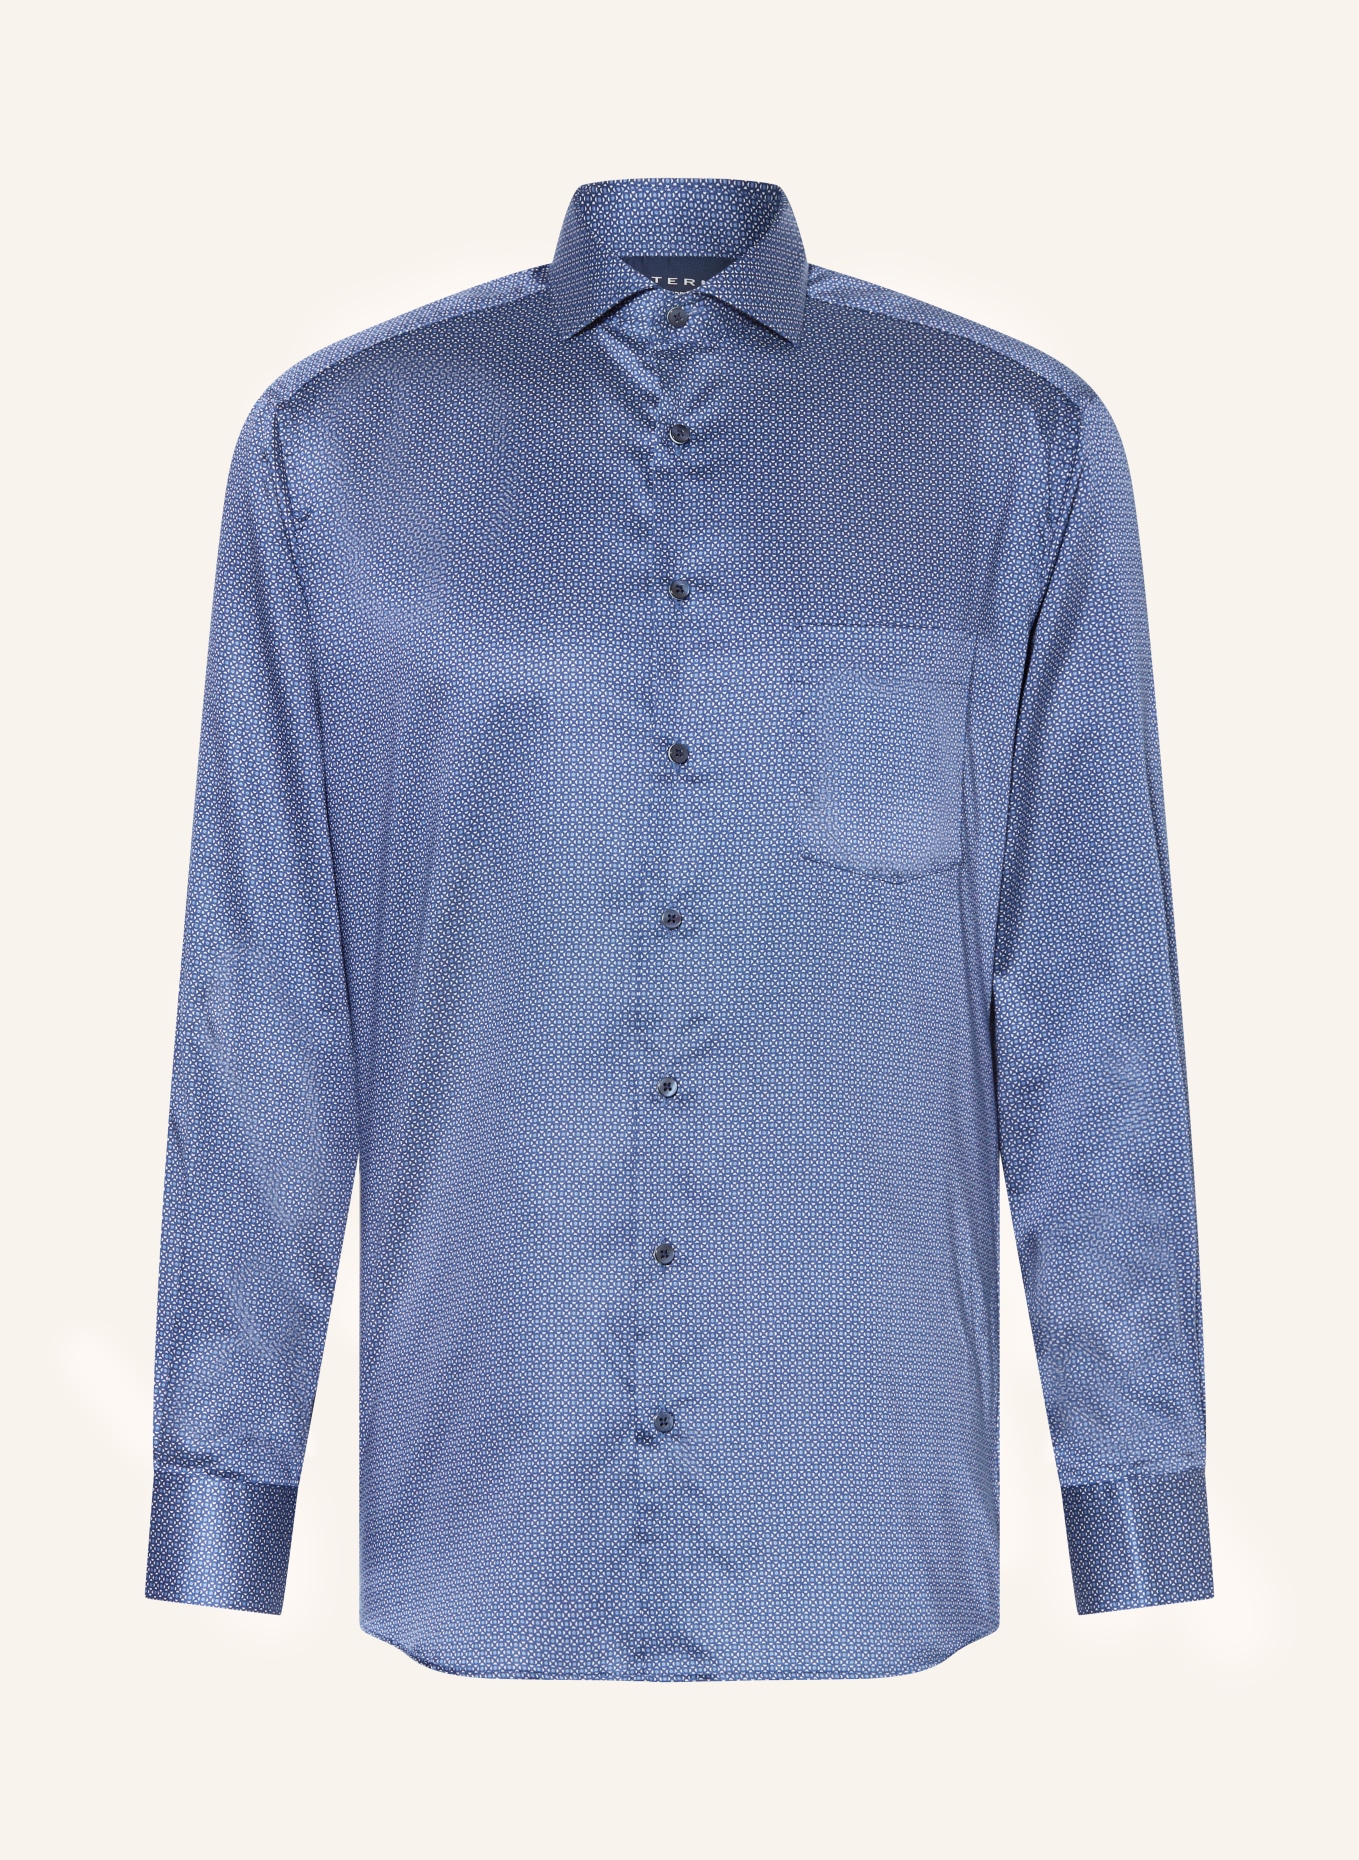 modern blue/ ETERNA blue/ Shirt white in dark fit